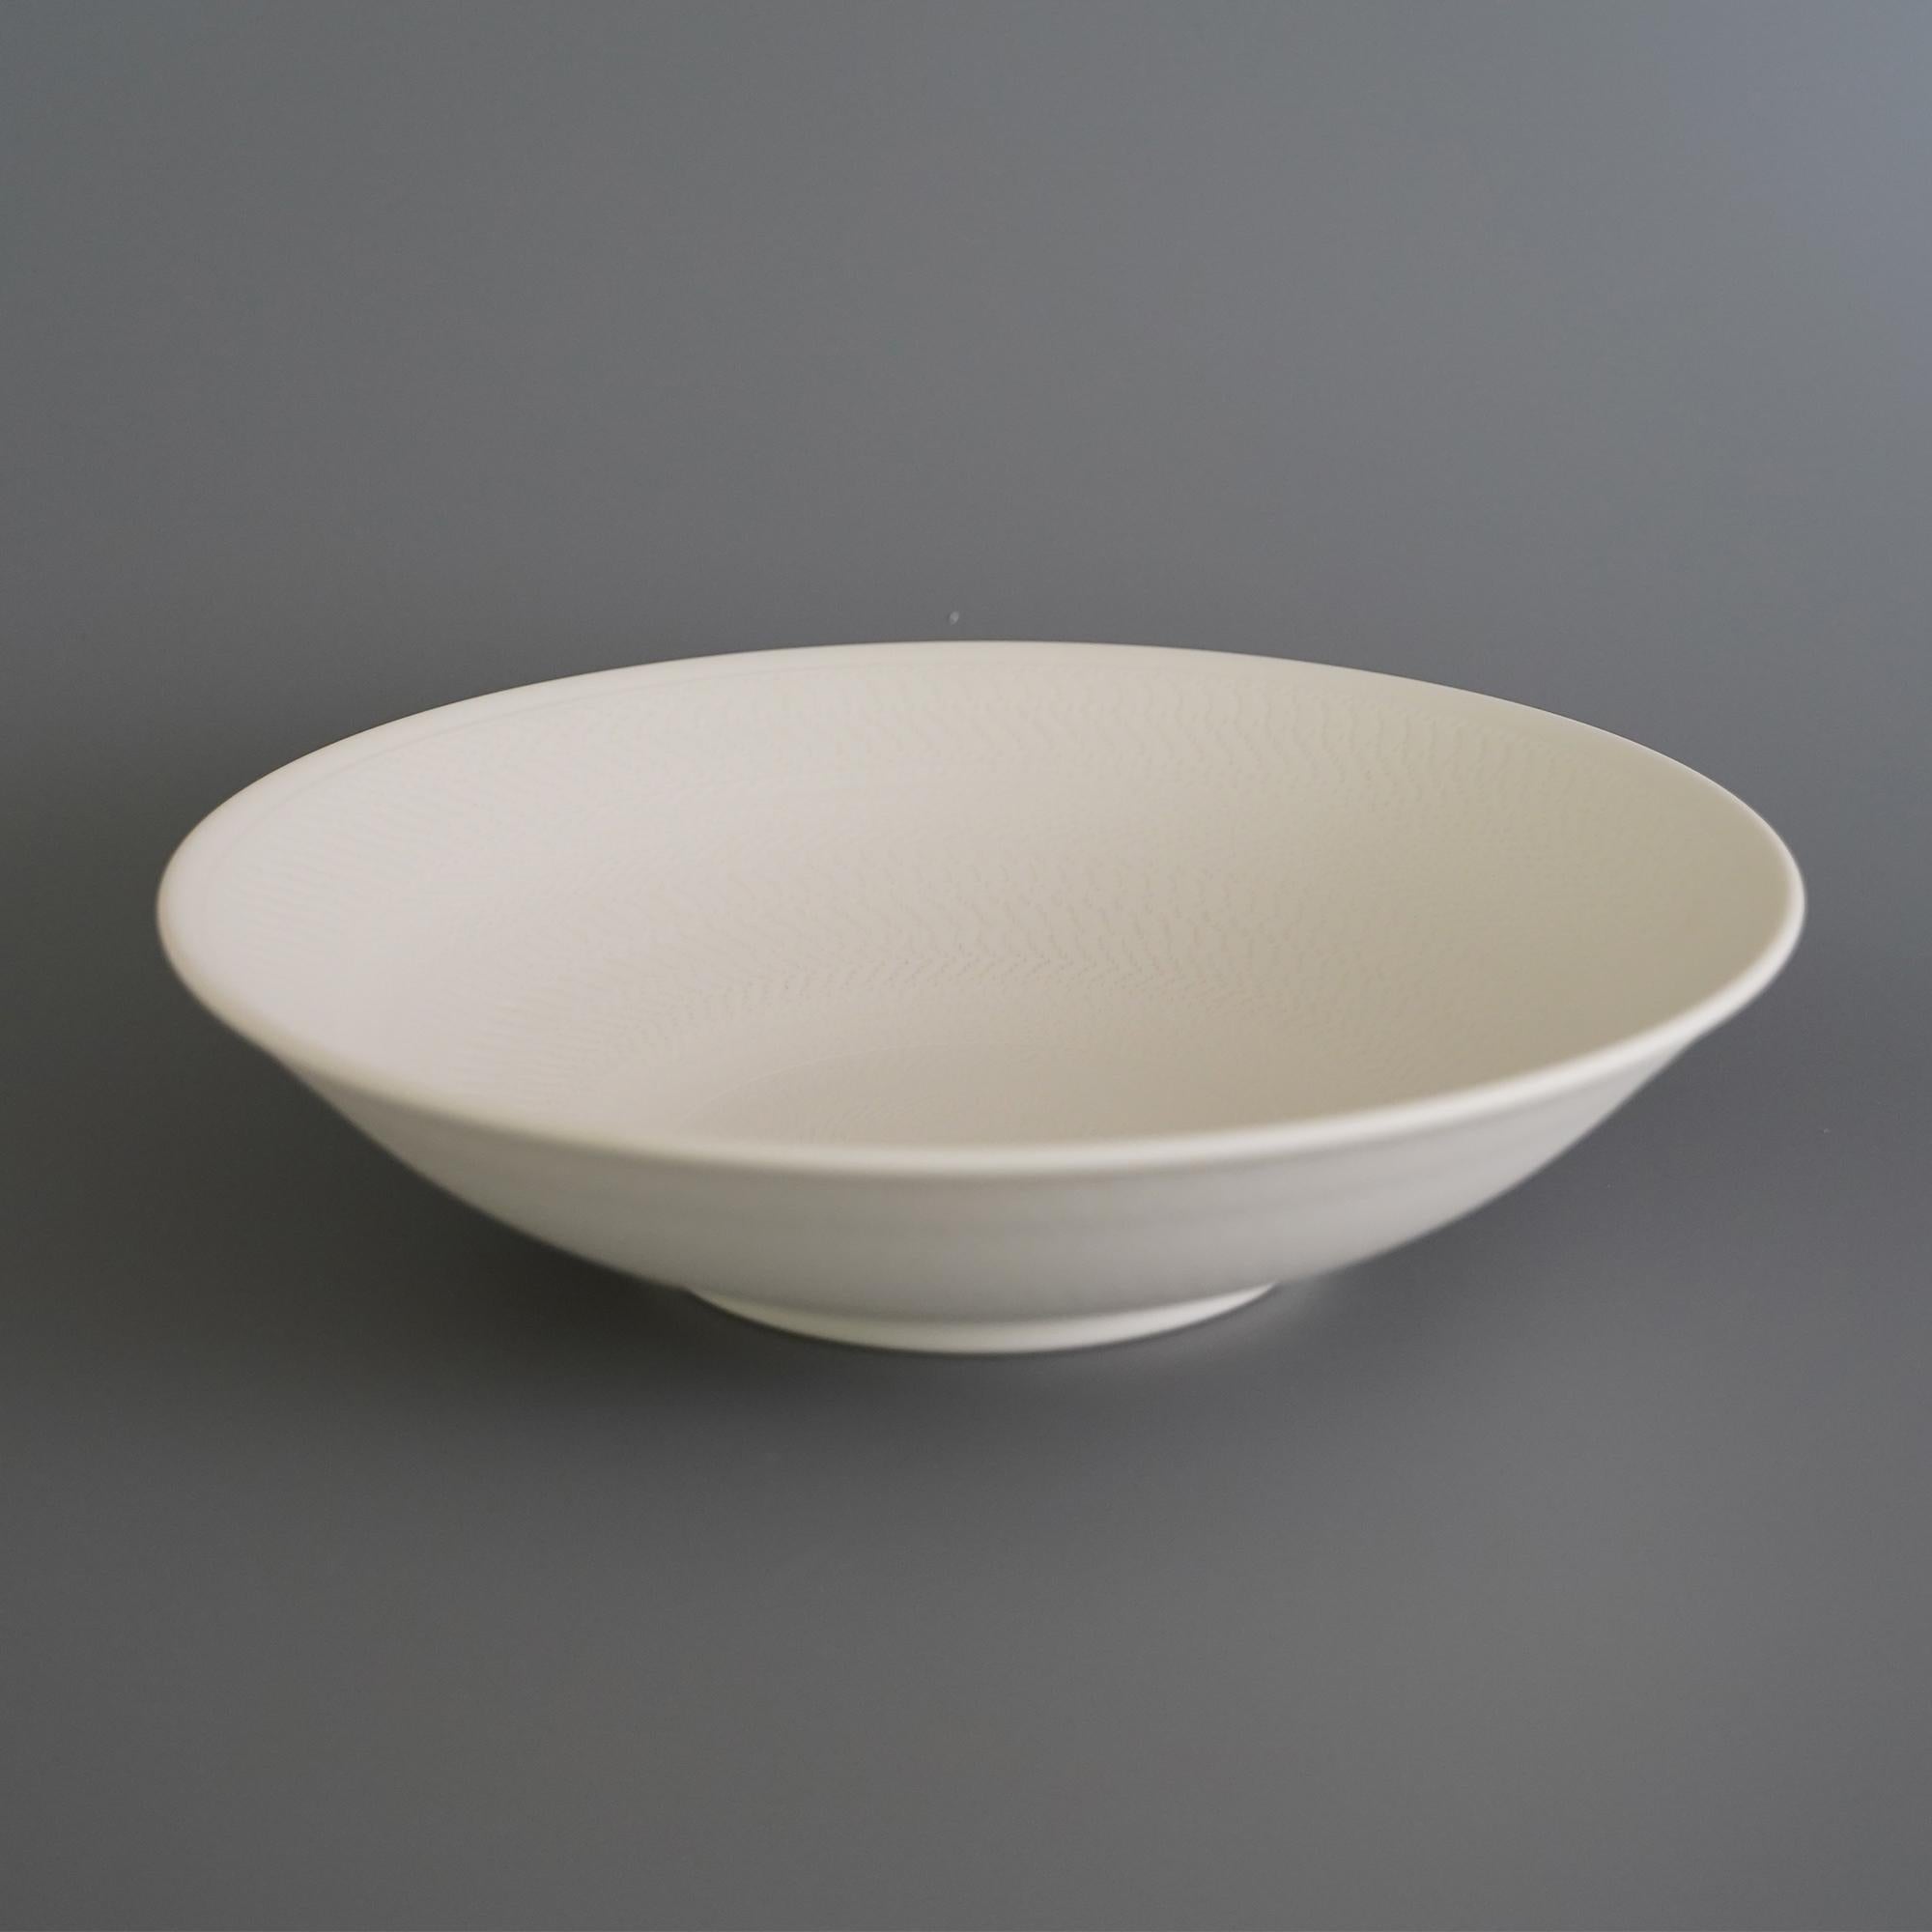 2er-Set Helice Obstschale von Studio Cúze
Abmessungen: B 27 x H 6,5 cm
MATERIALIEN: Keramik

Die Helice Fruit Bowl ist eine ganz weiße Schale mit einer besonderen Qualität und einem einzigartigen handgefertigten Muster. Die Schale hat eine